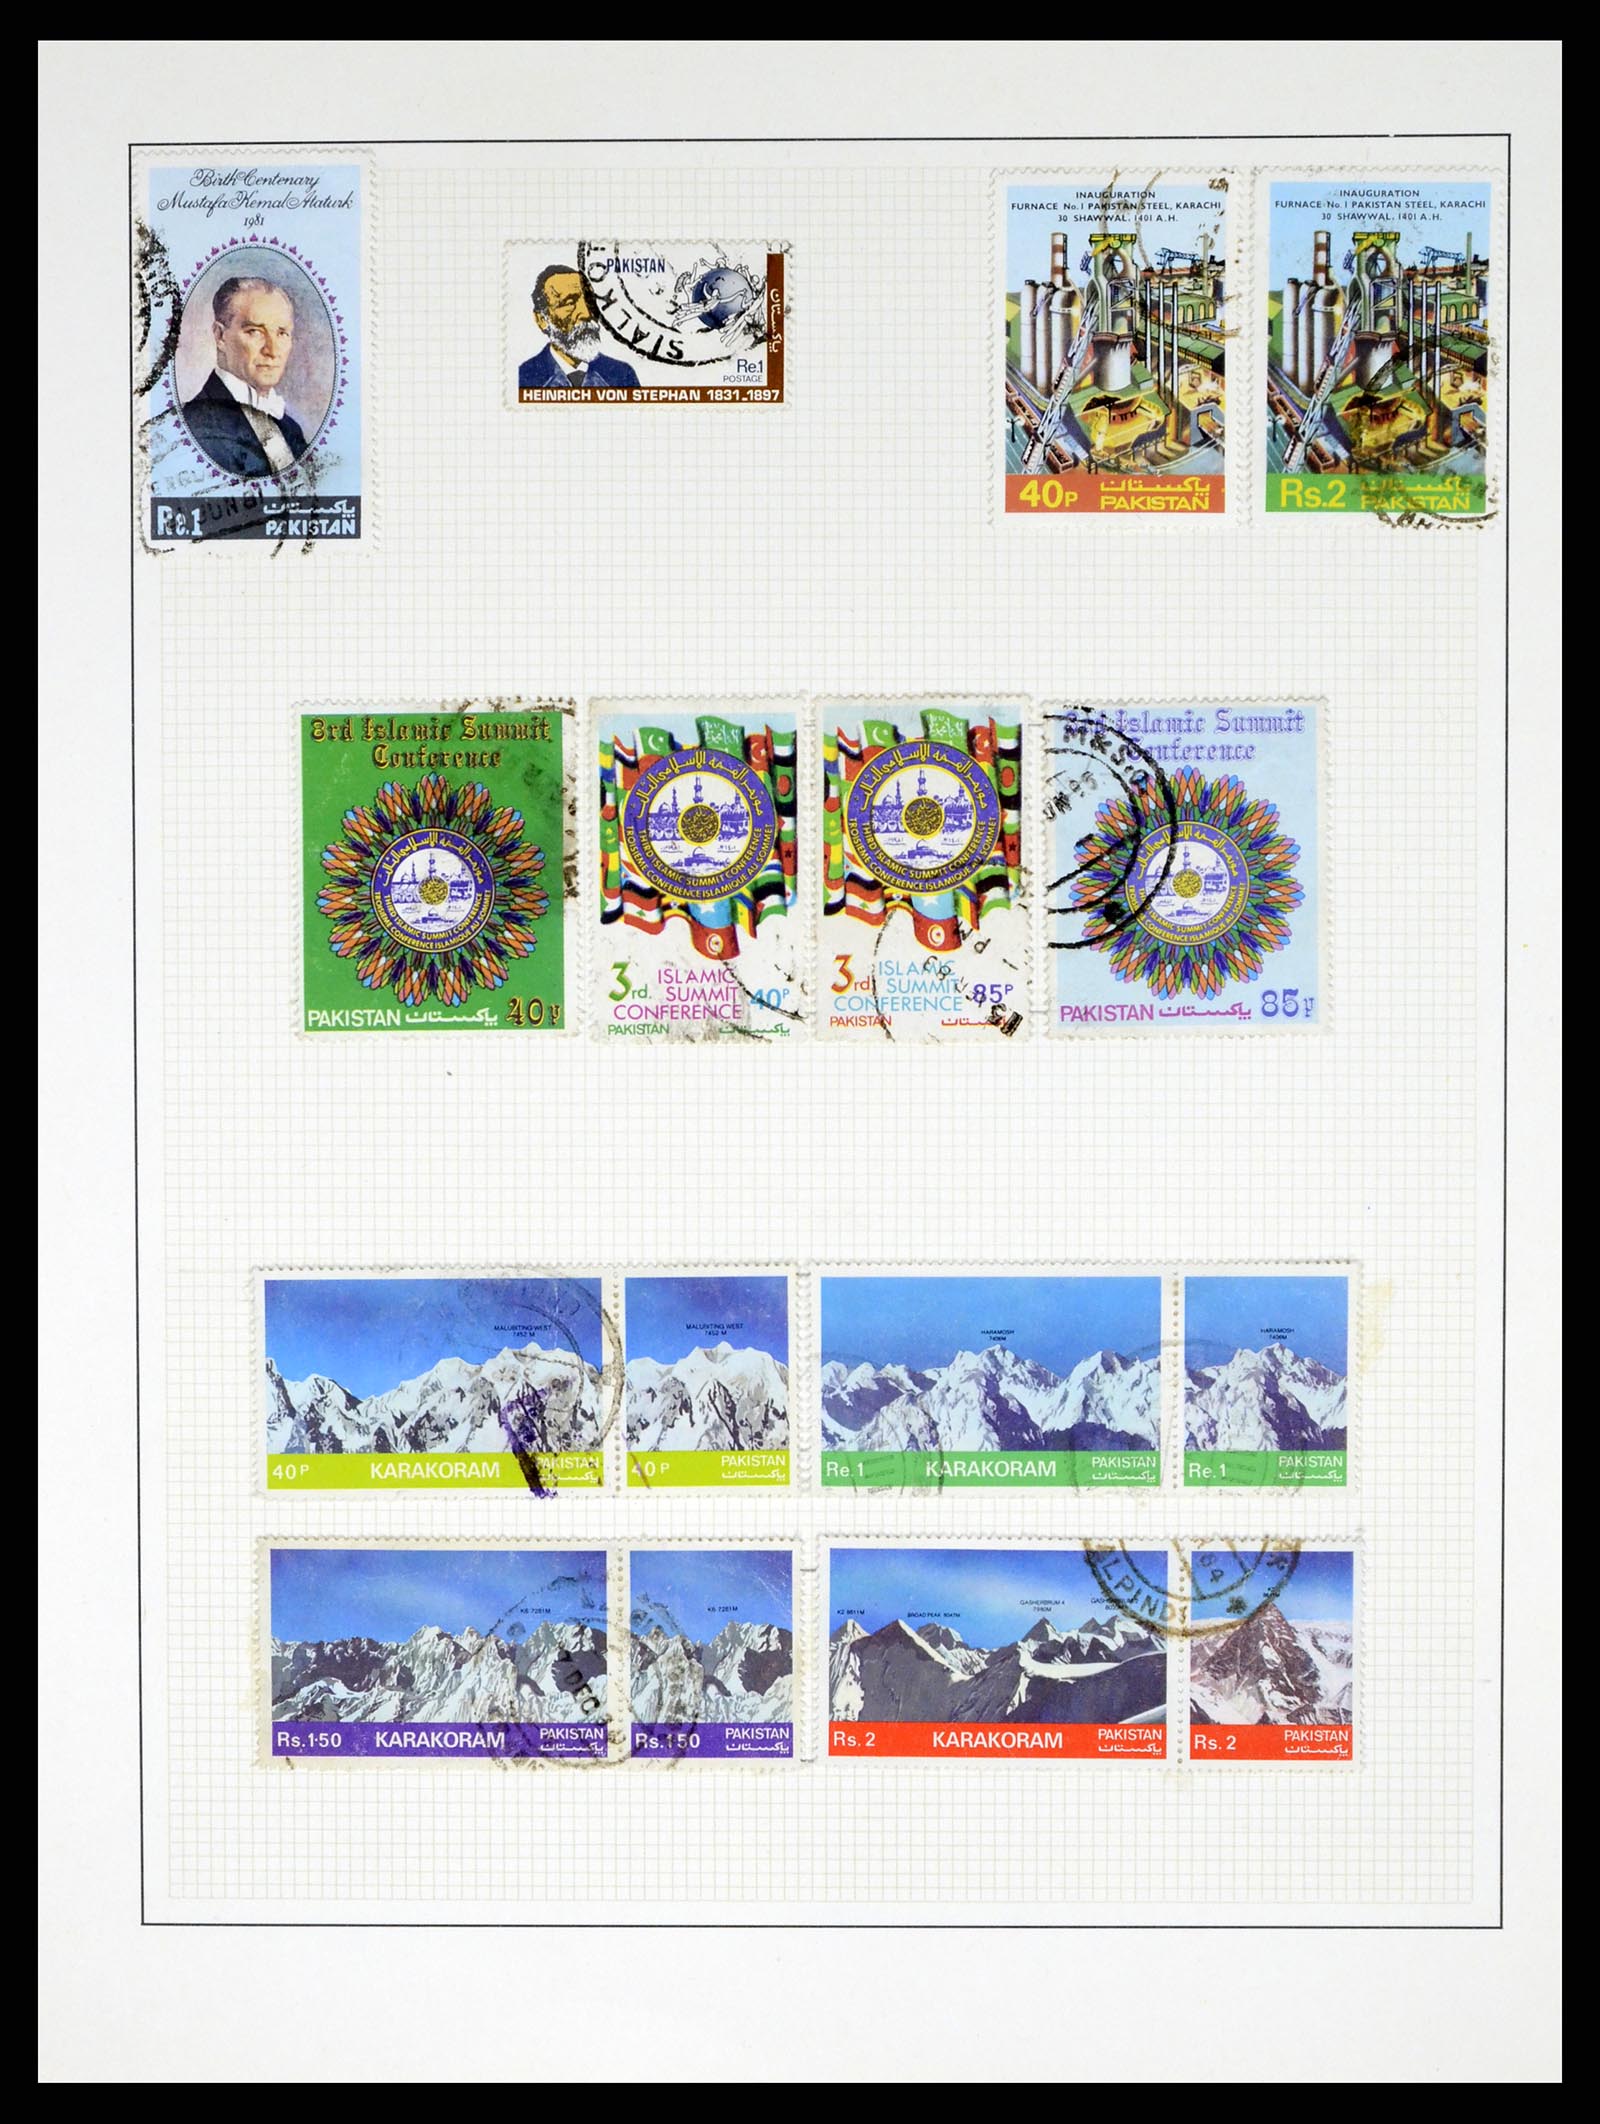 37619 051 - Stamp collection 37619 Pakistan/Bangladesh 1947-2000.